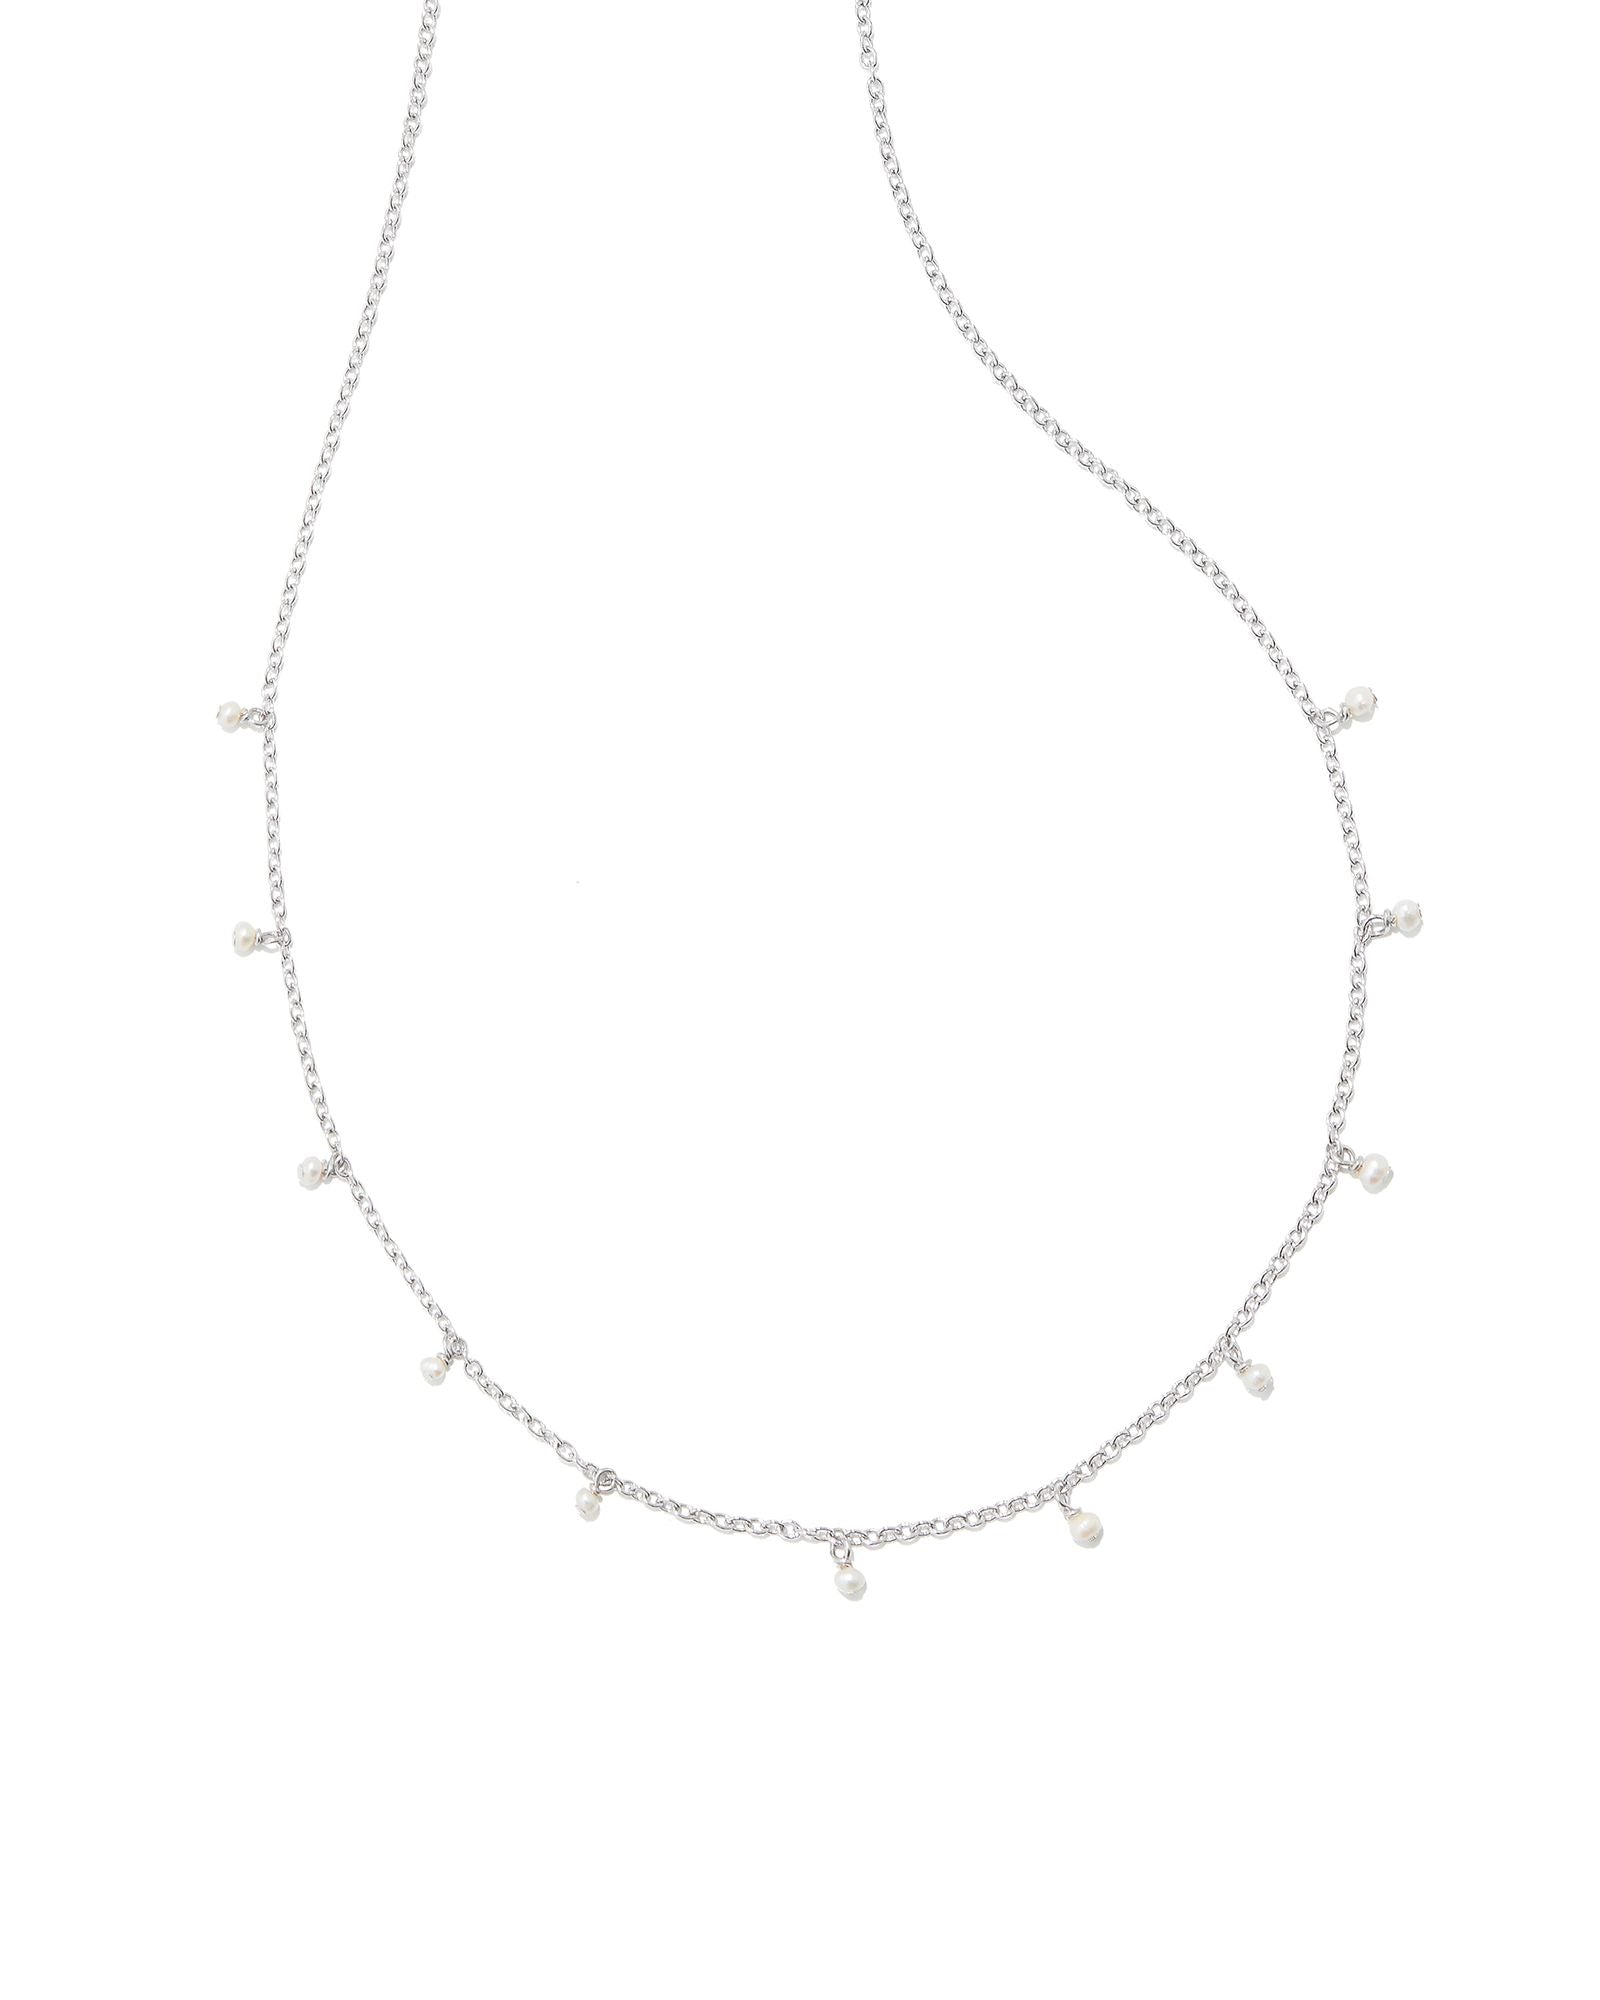 Willa Pearl Strand Necklace Rhodium White Pearl